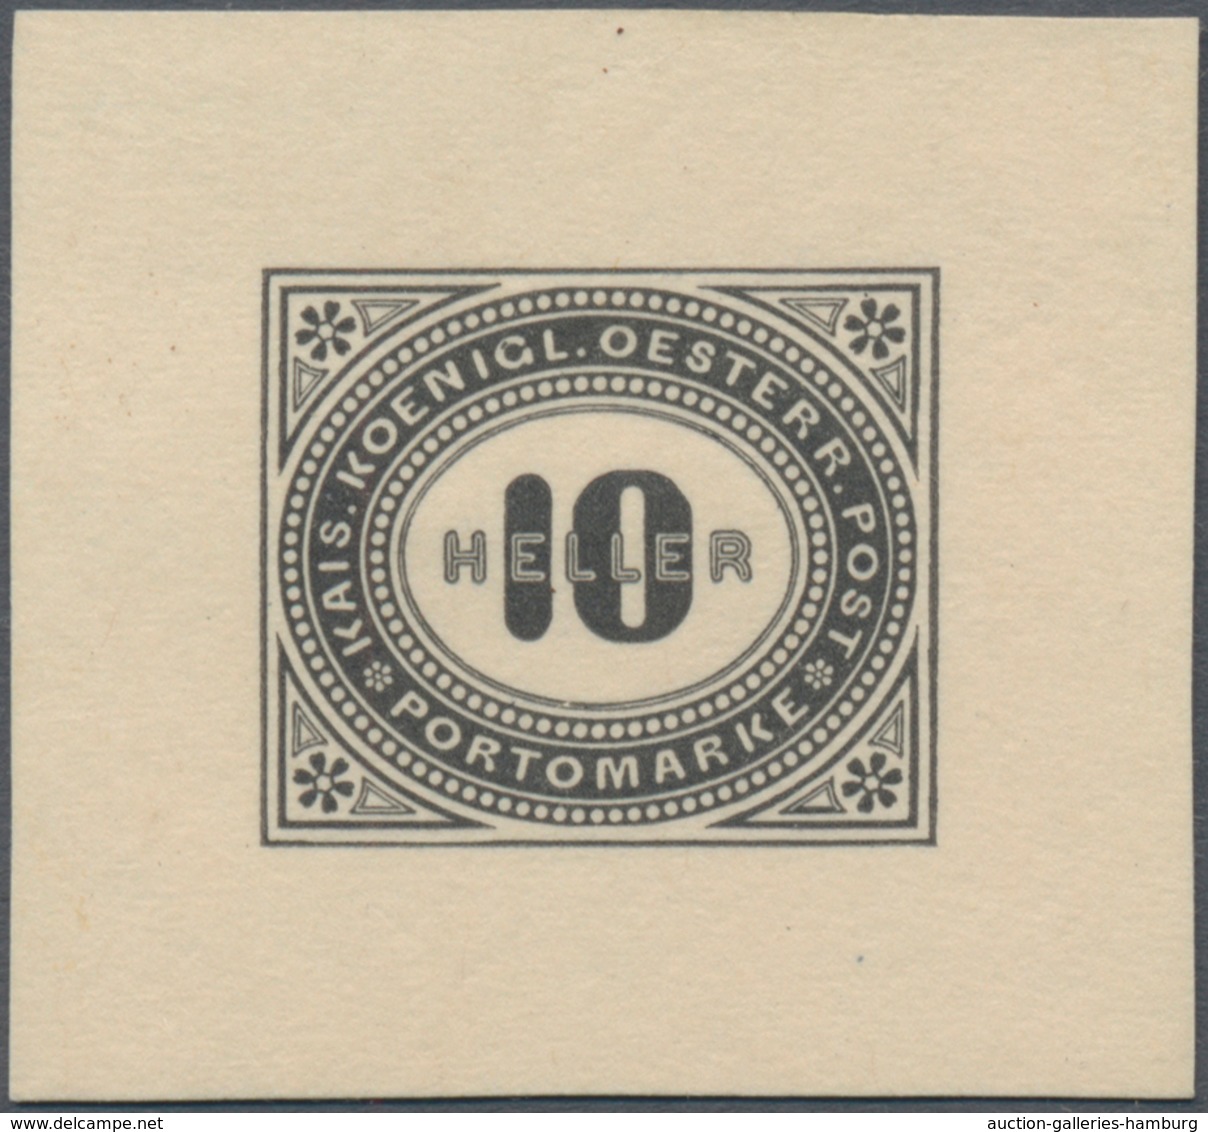 Österreich - Portomarken: 1899/1900, 1 H. bis 100 H., komplette Serie von zwölf Werten je als Einzel